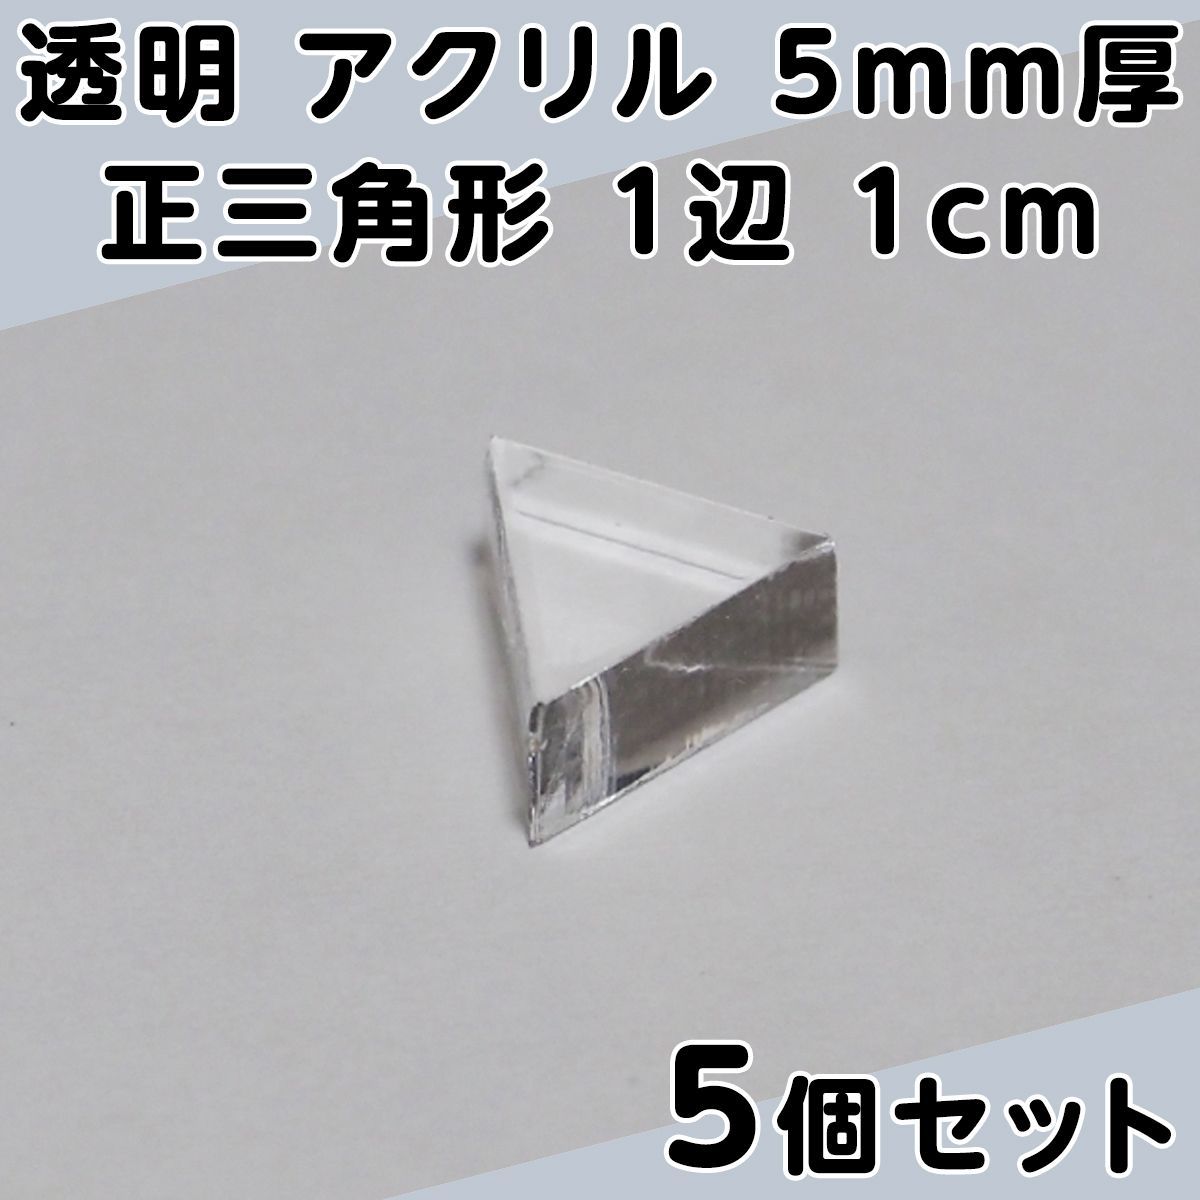 透明 アクリル 5mm厚 正三角形 1辺 1cm 5個セット - メルカリ